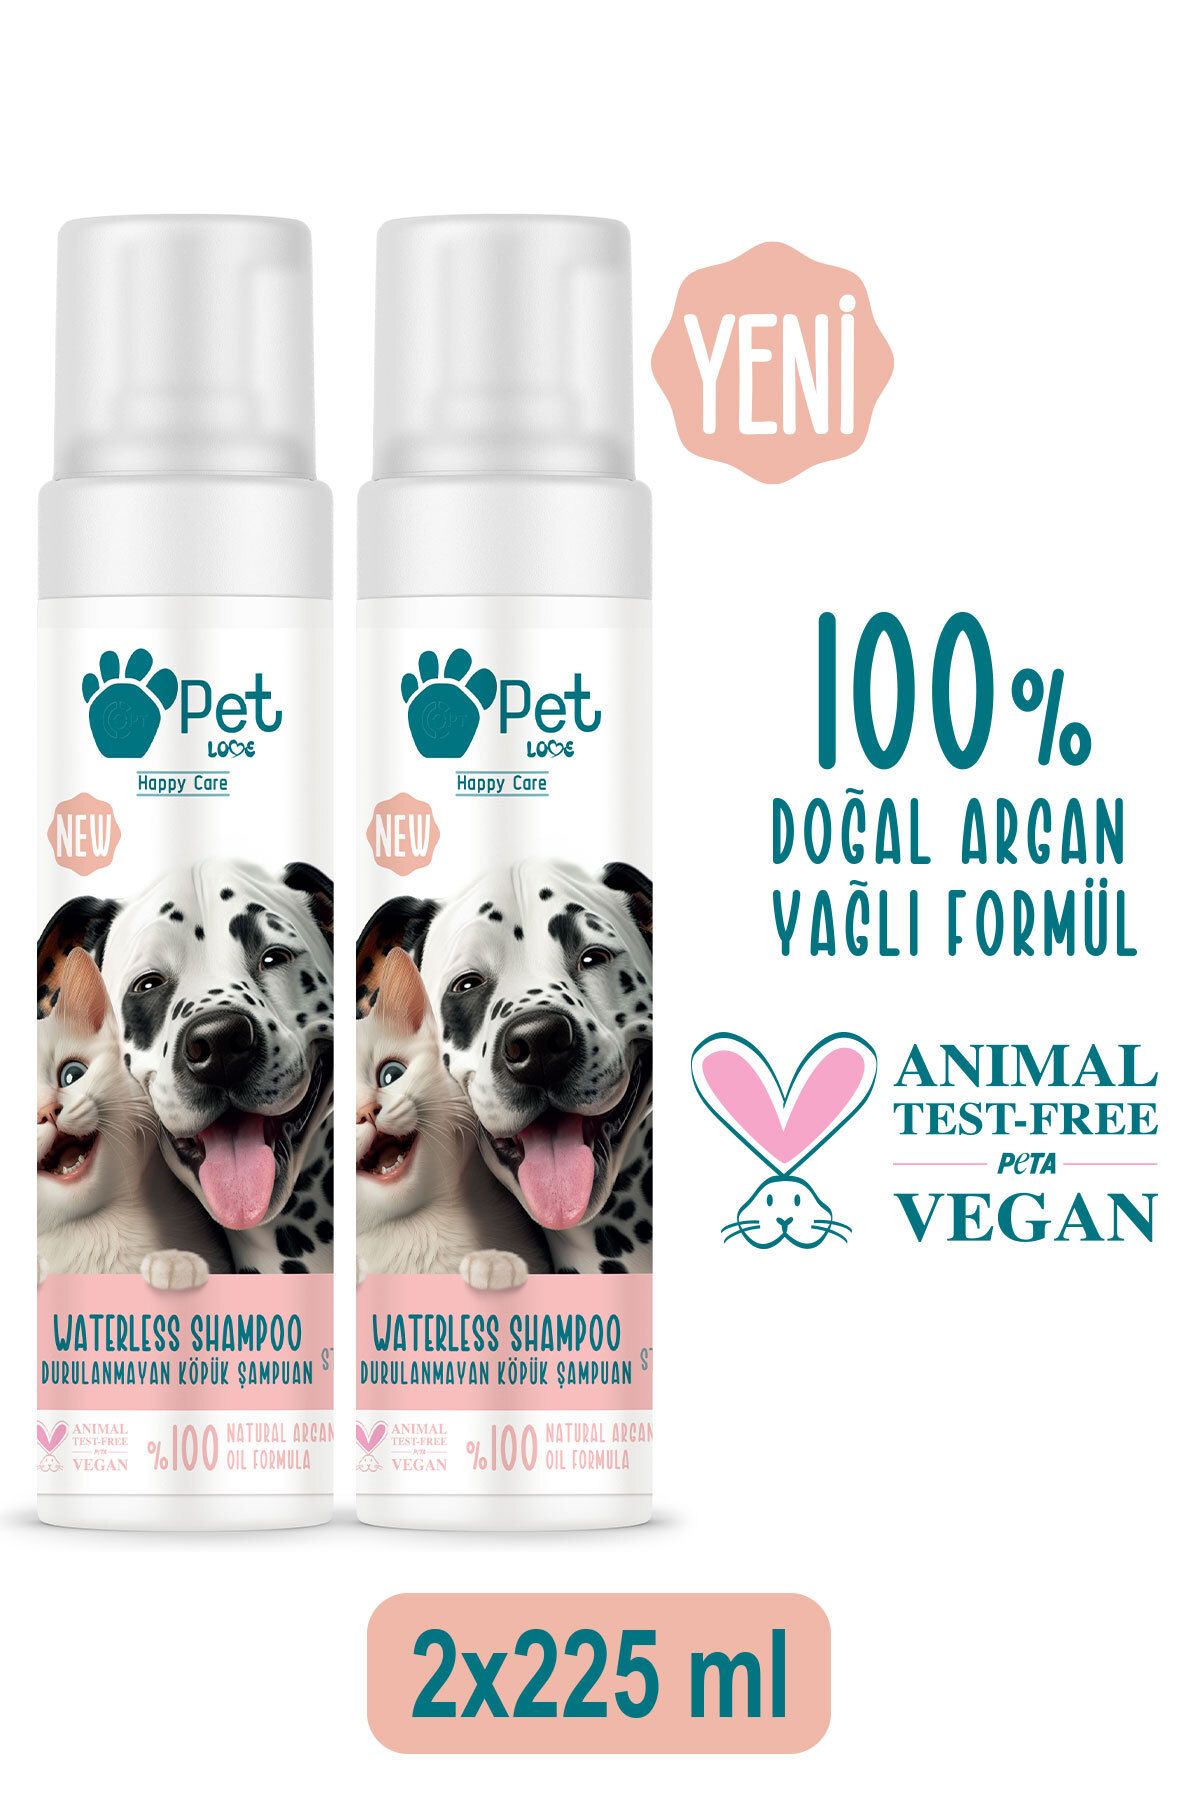 Pet Love Durulanmayan Köpük Şampuan Çilek 2x225 ml 100% Doğal Argan Yağlı